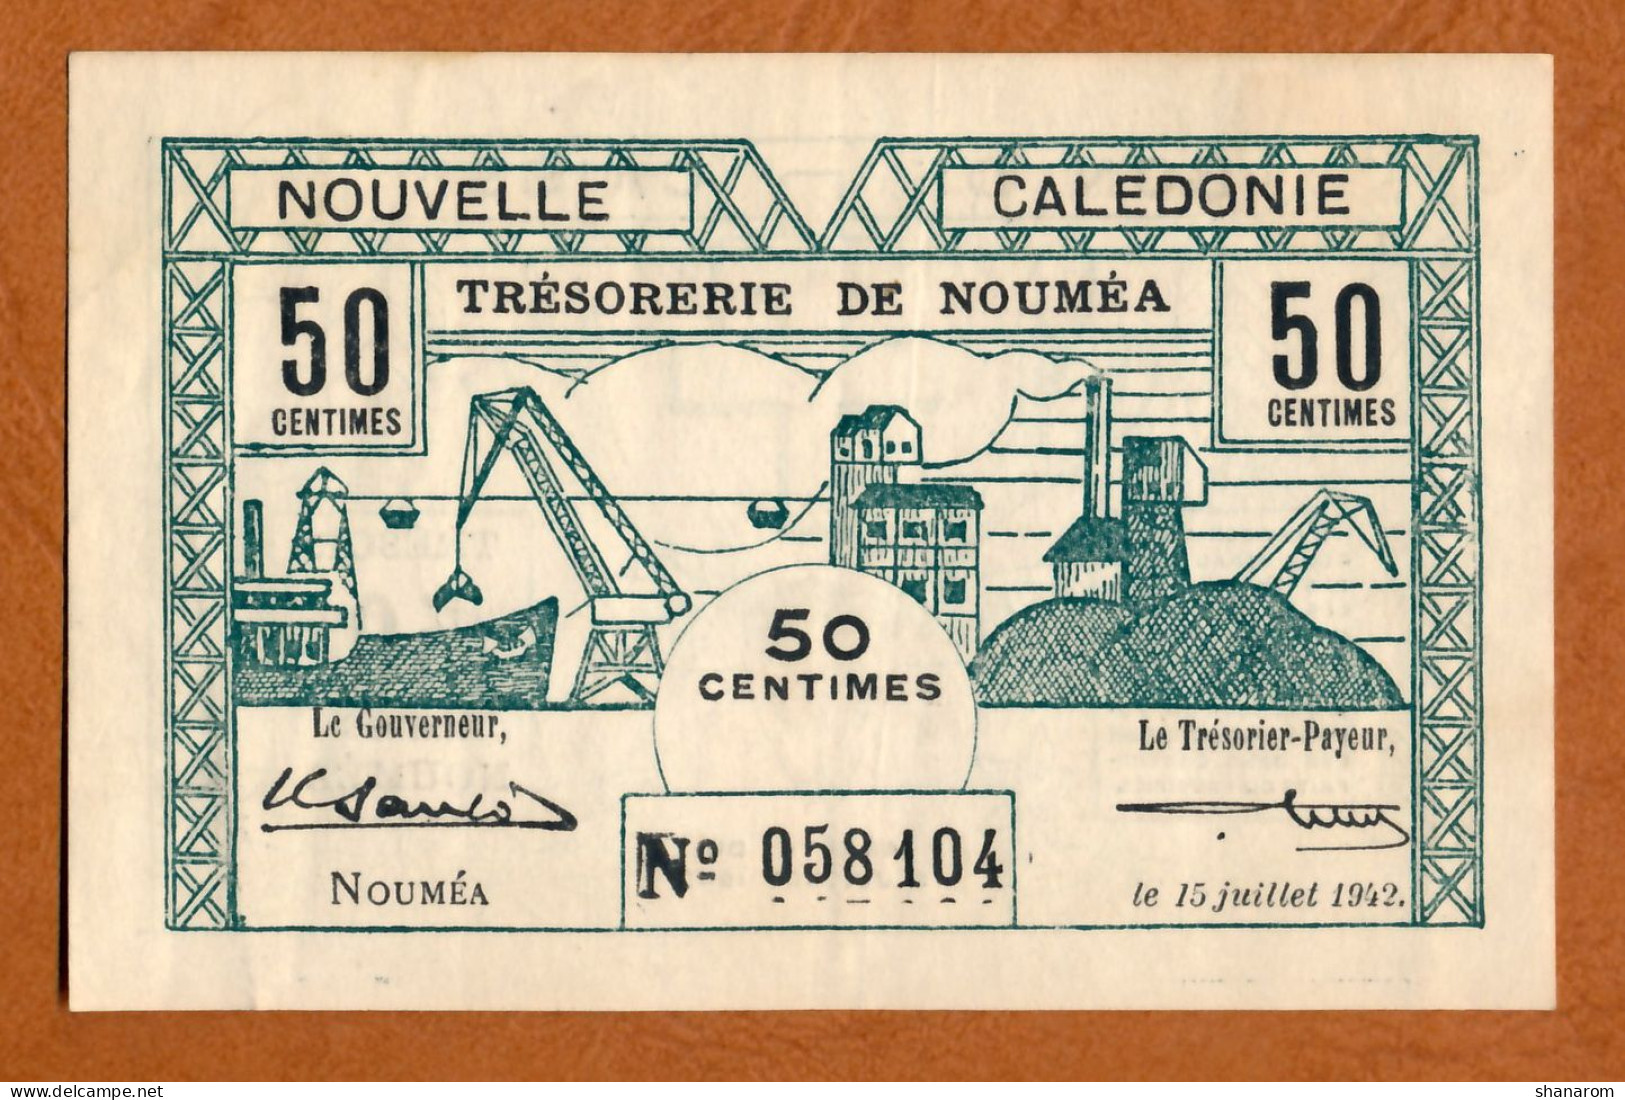 1942 // NOUVELLE CALEDONIE // TRESORERIE DE NOUMEA // JUILLET 1942 // Cinquante Centimes // VF-TTB - Nouméa (Nieuw-Caledonië 1873-1985)